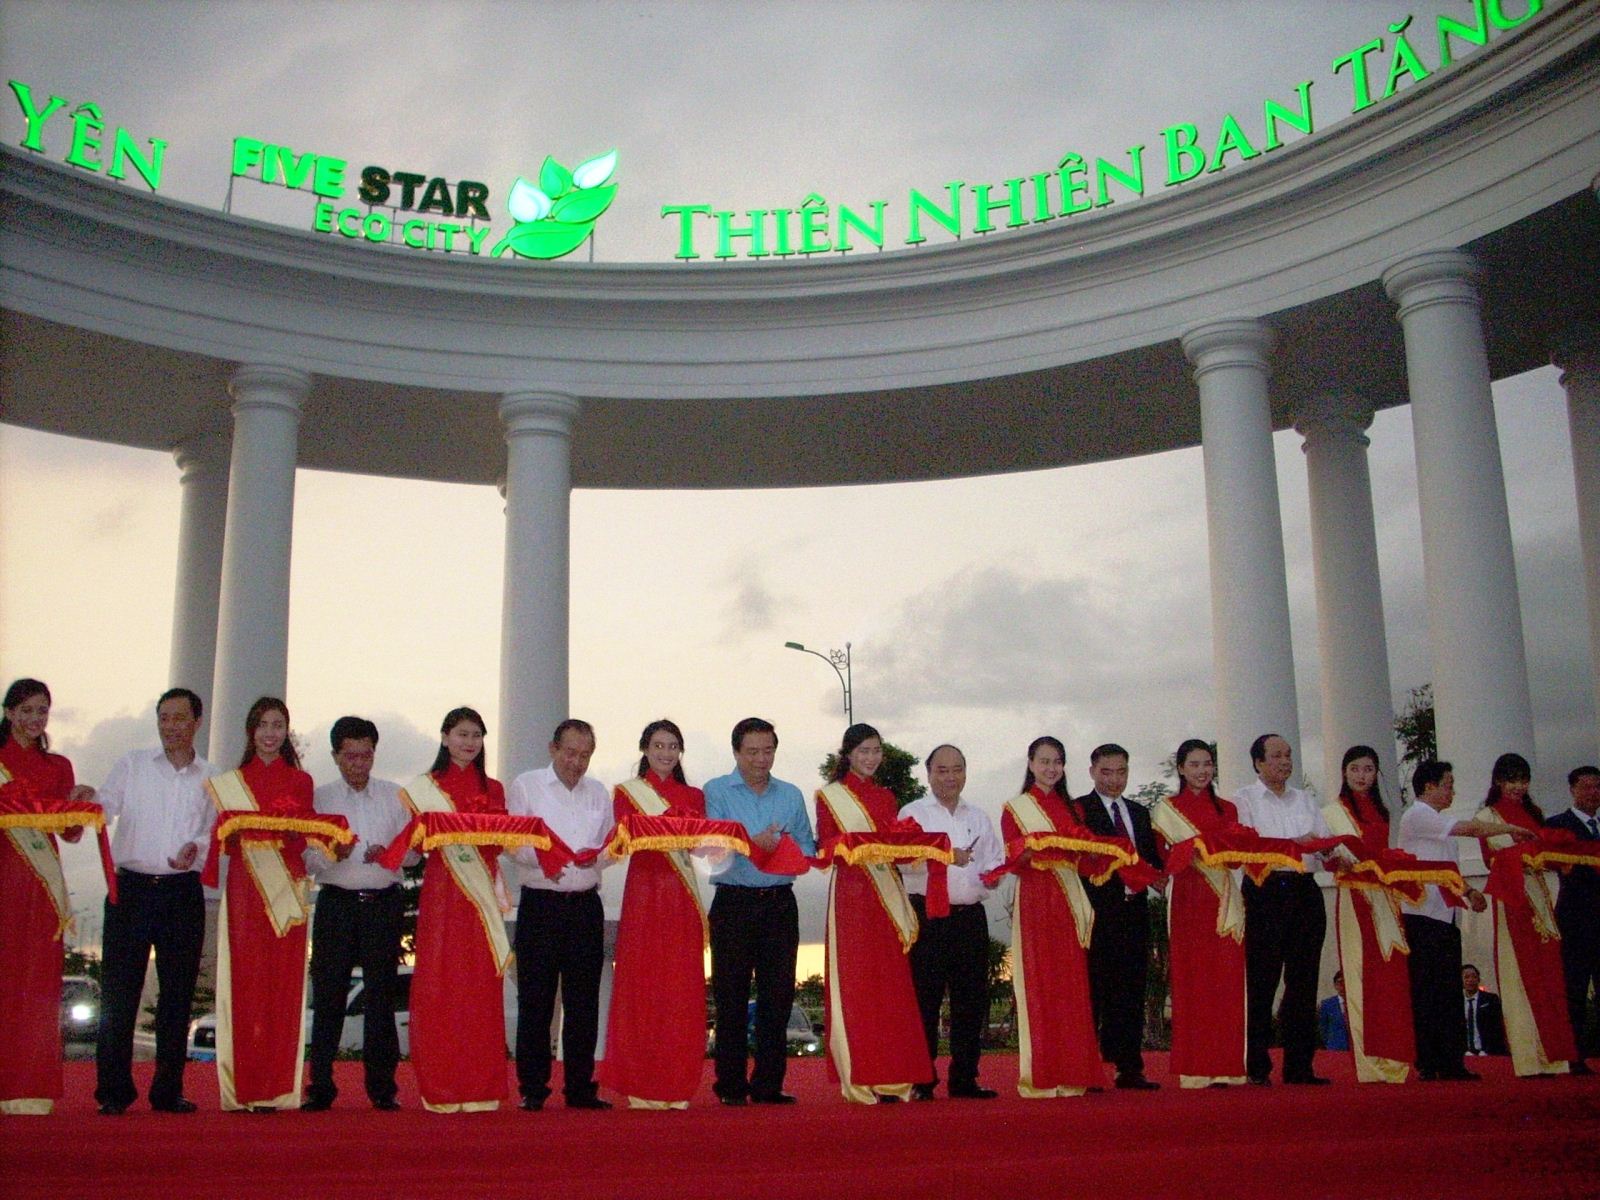 Thủ tướng Nguyễn Xuân Phúc cắt băng khánh thành cổng chào Five Star Eco City